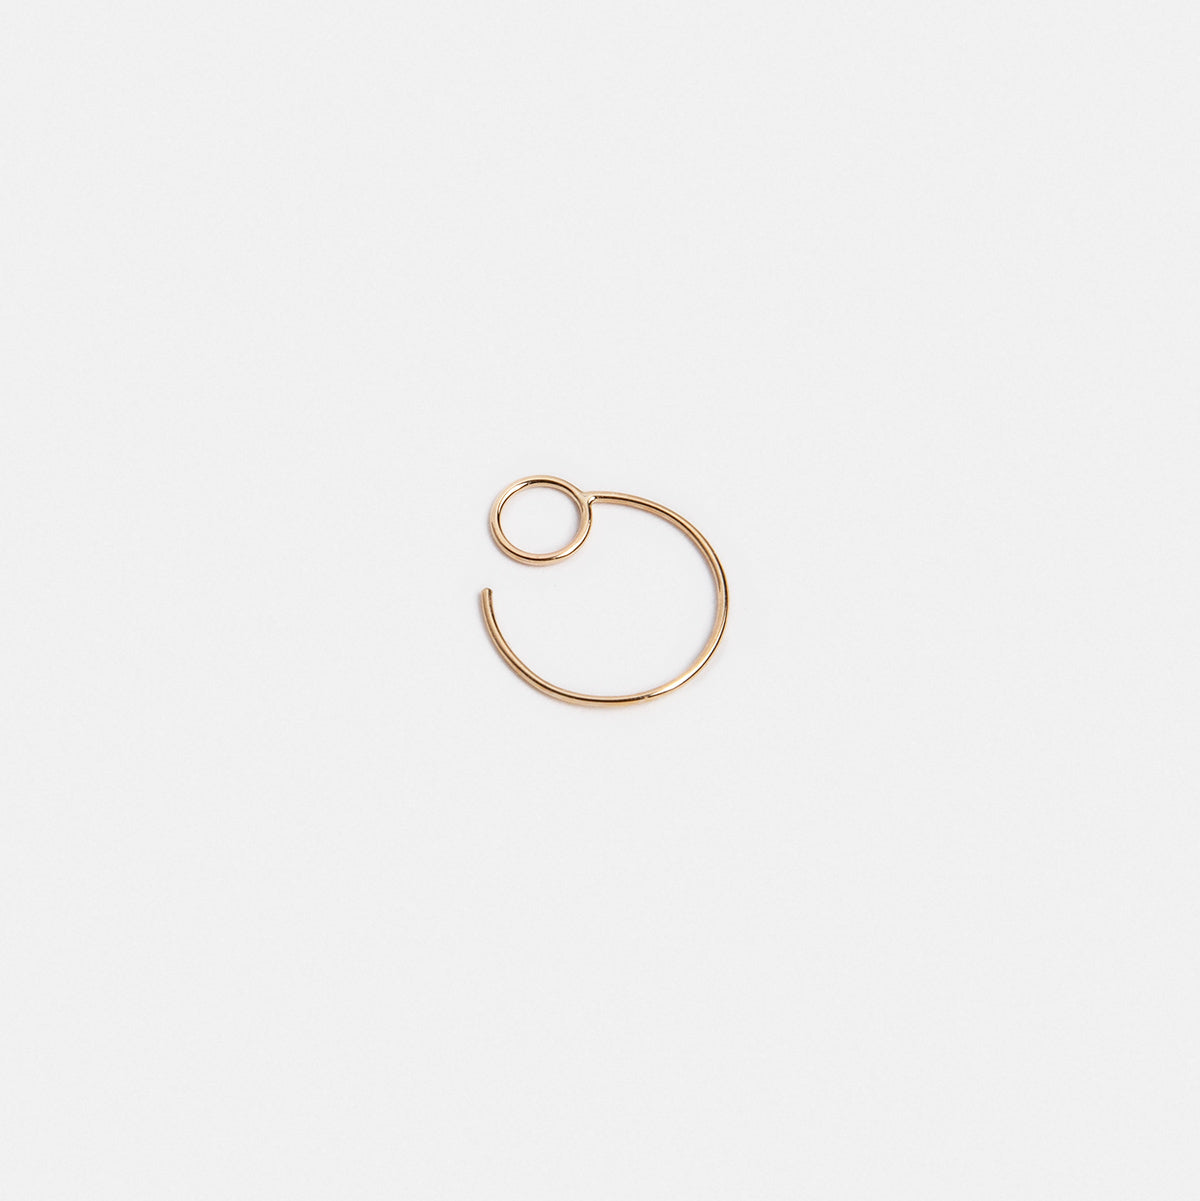 Saga Small Designer Hoop Earrings in 14k Gold By SHW Fine Jewelry NYC